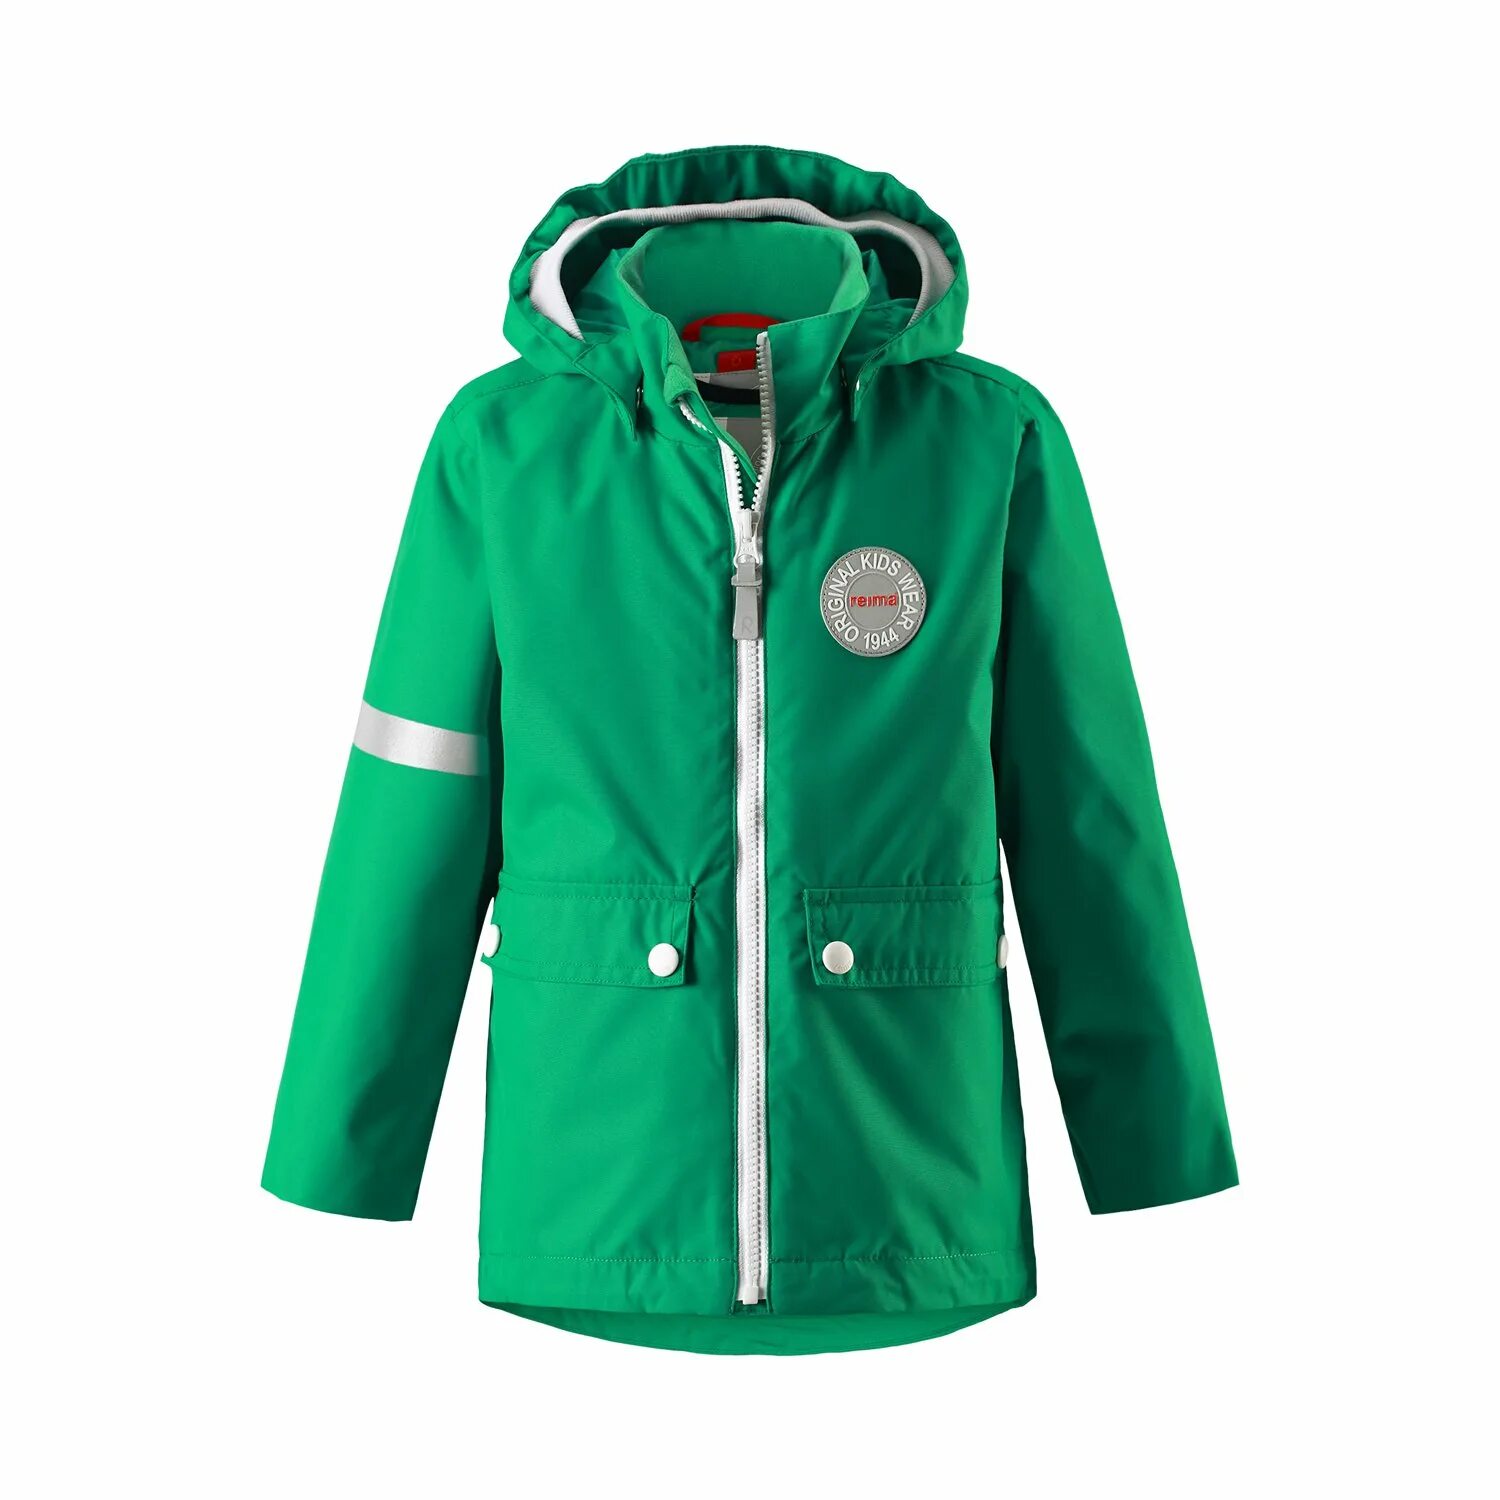 Куртка Рейма TAAG. Reima Aapeli куртка. Куртка Рейма 3 в 1 с жилеткой. Reima куртка демисезонная TAAG. Зеленые куртки для мальчика